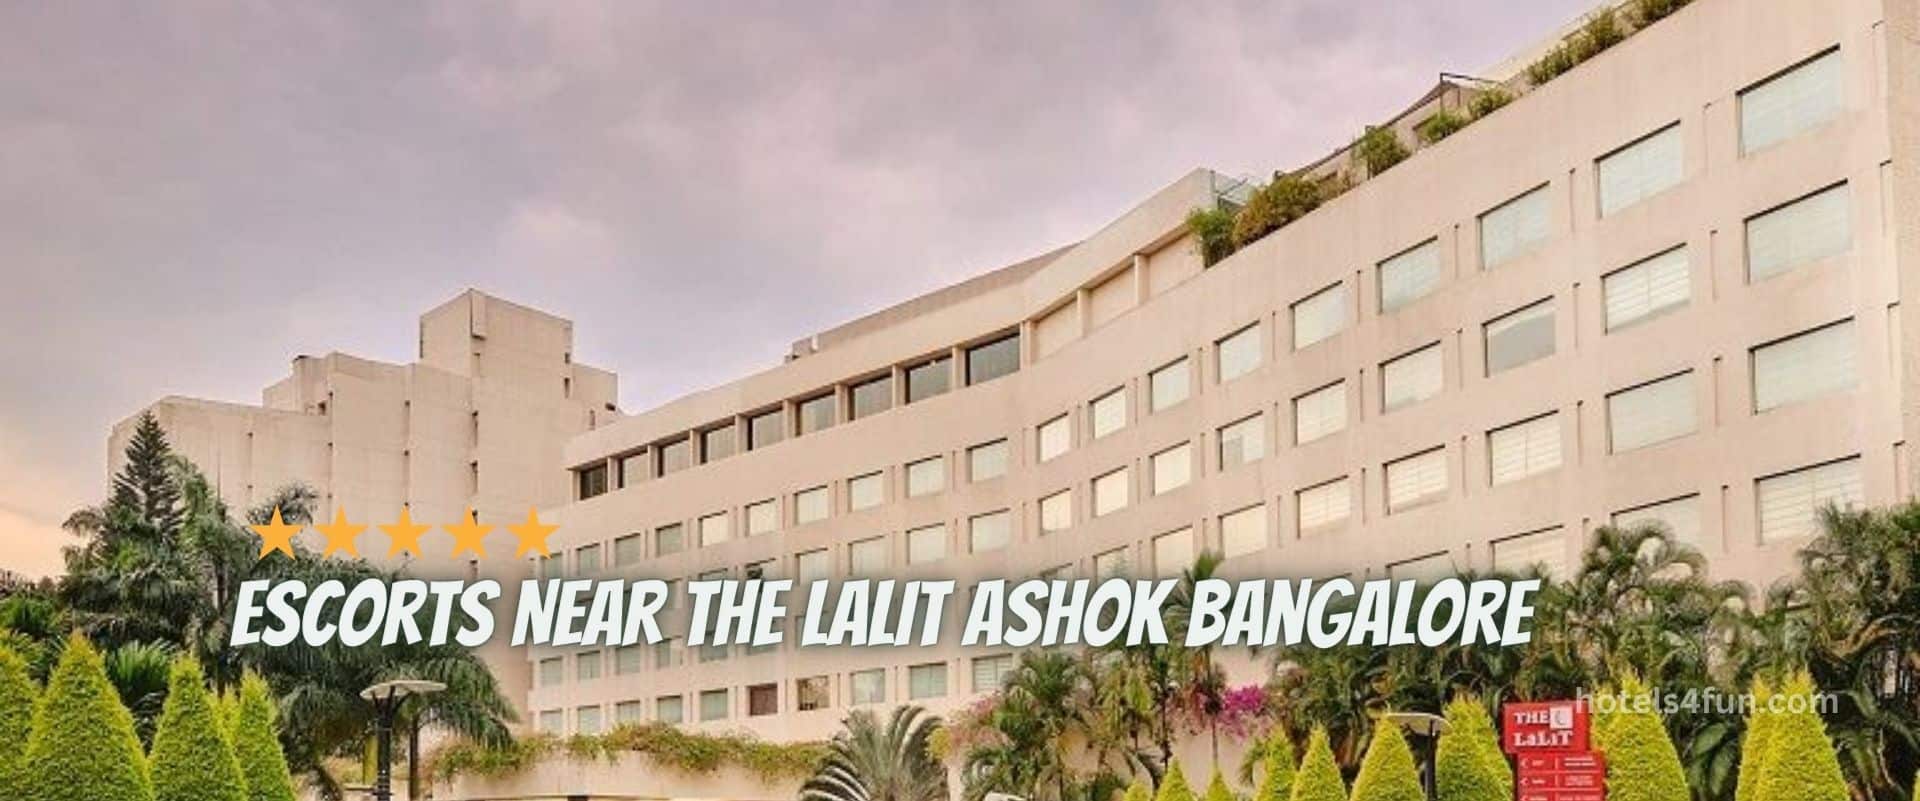 escorts-near-the-lalit-ashok-hotel-bangalore Hotel Escorts